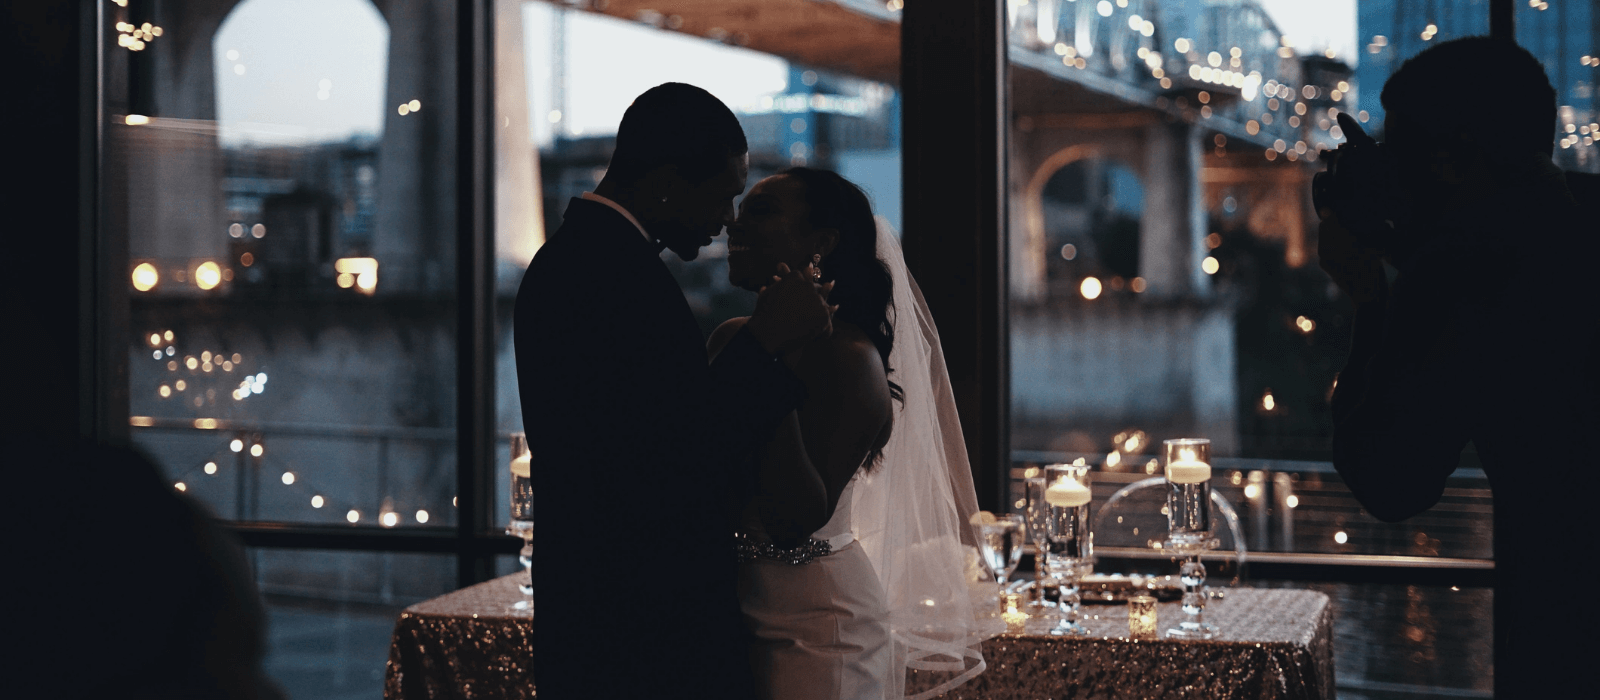 Ślub na 15 osób I Jak zorganizować _ Design Your Wedding